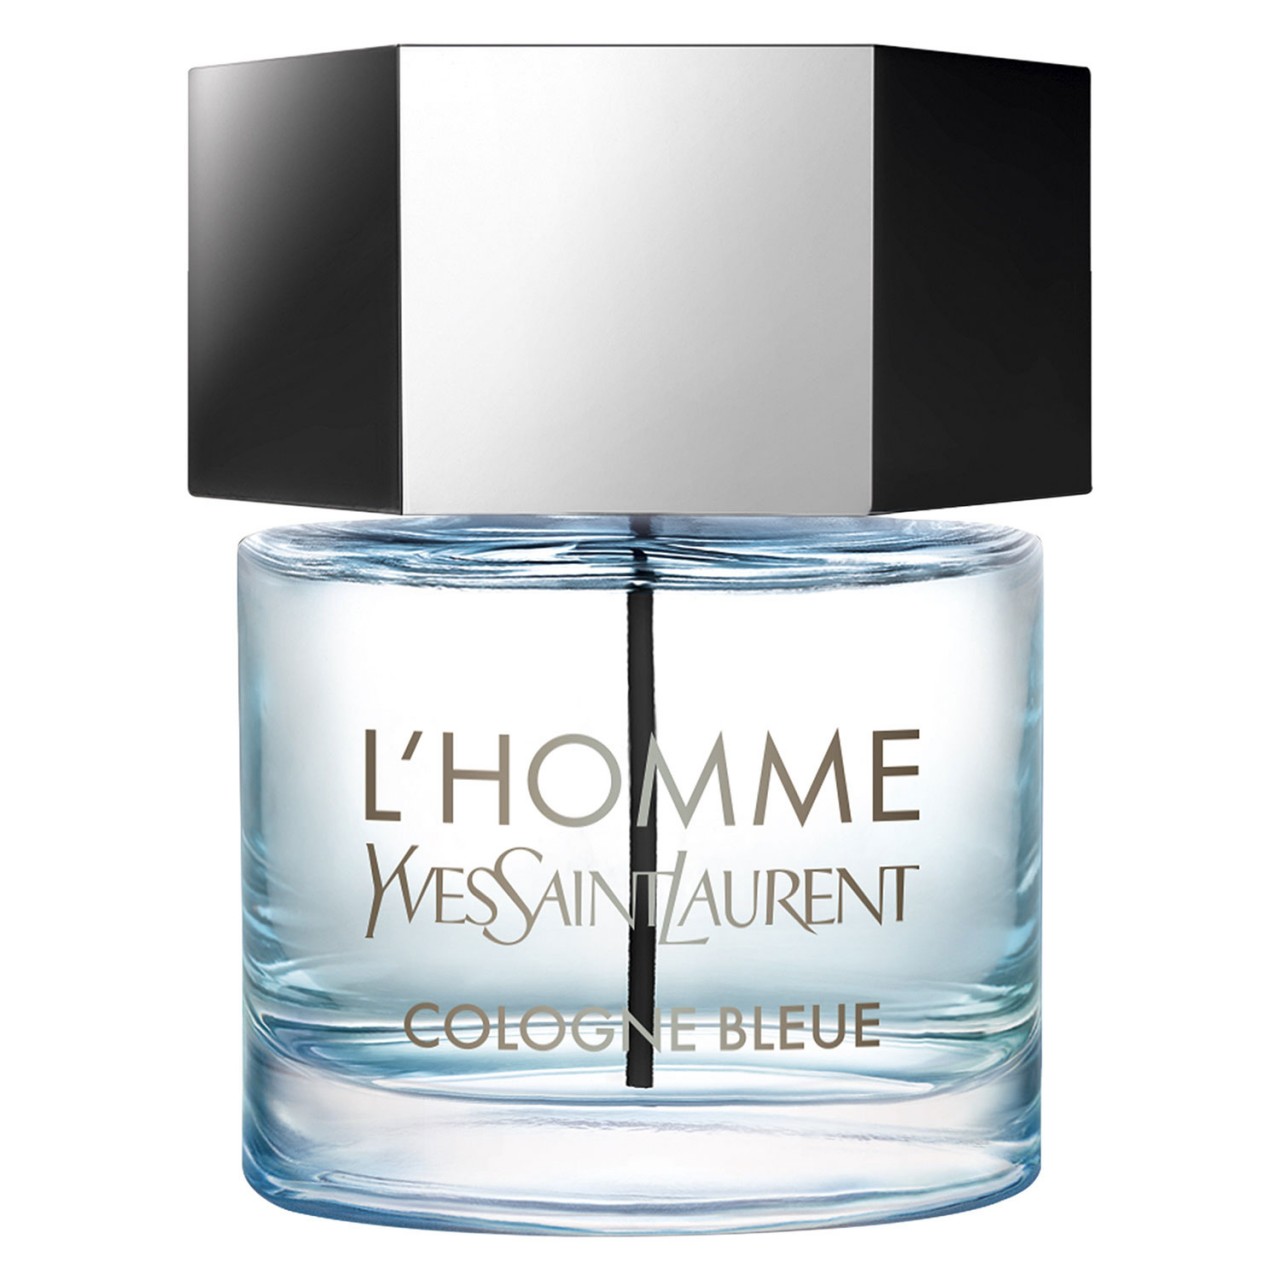 L'Homme - Cologne Bleue von Yves Saint Laurent